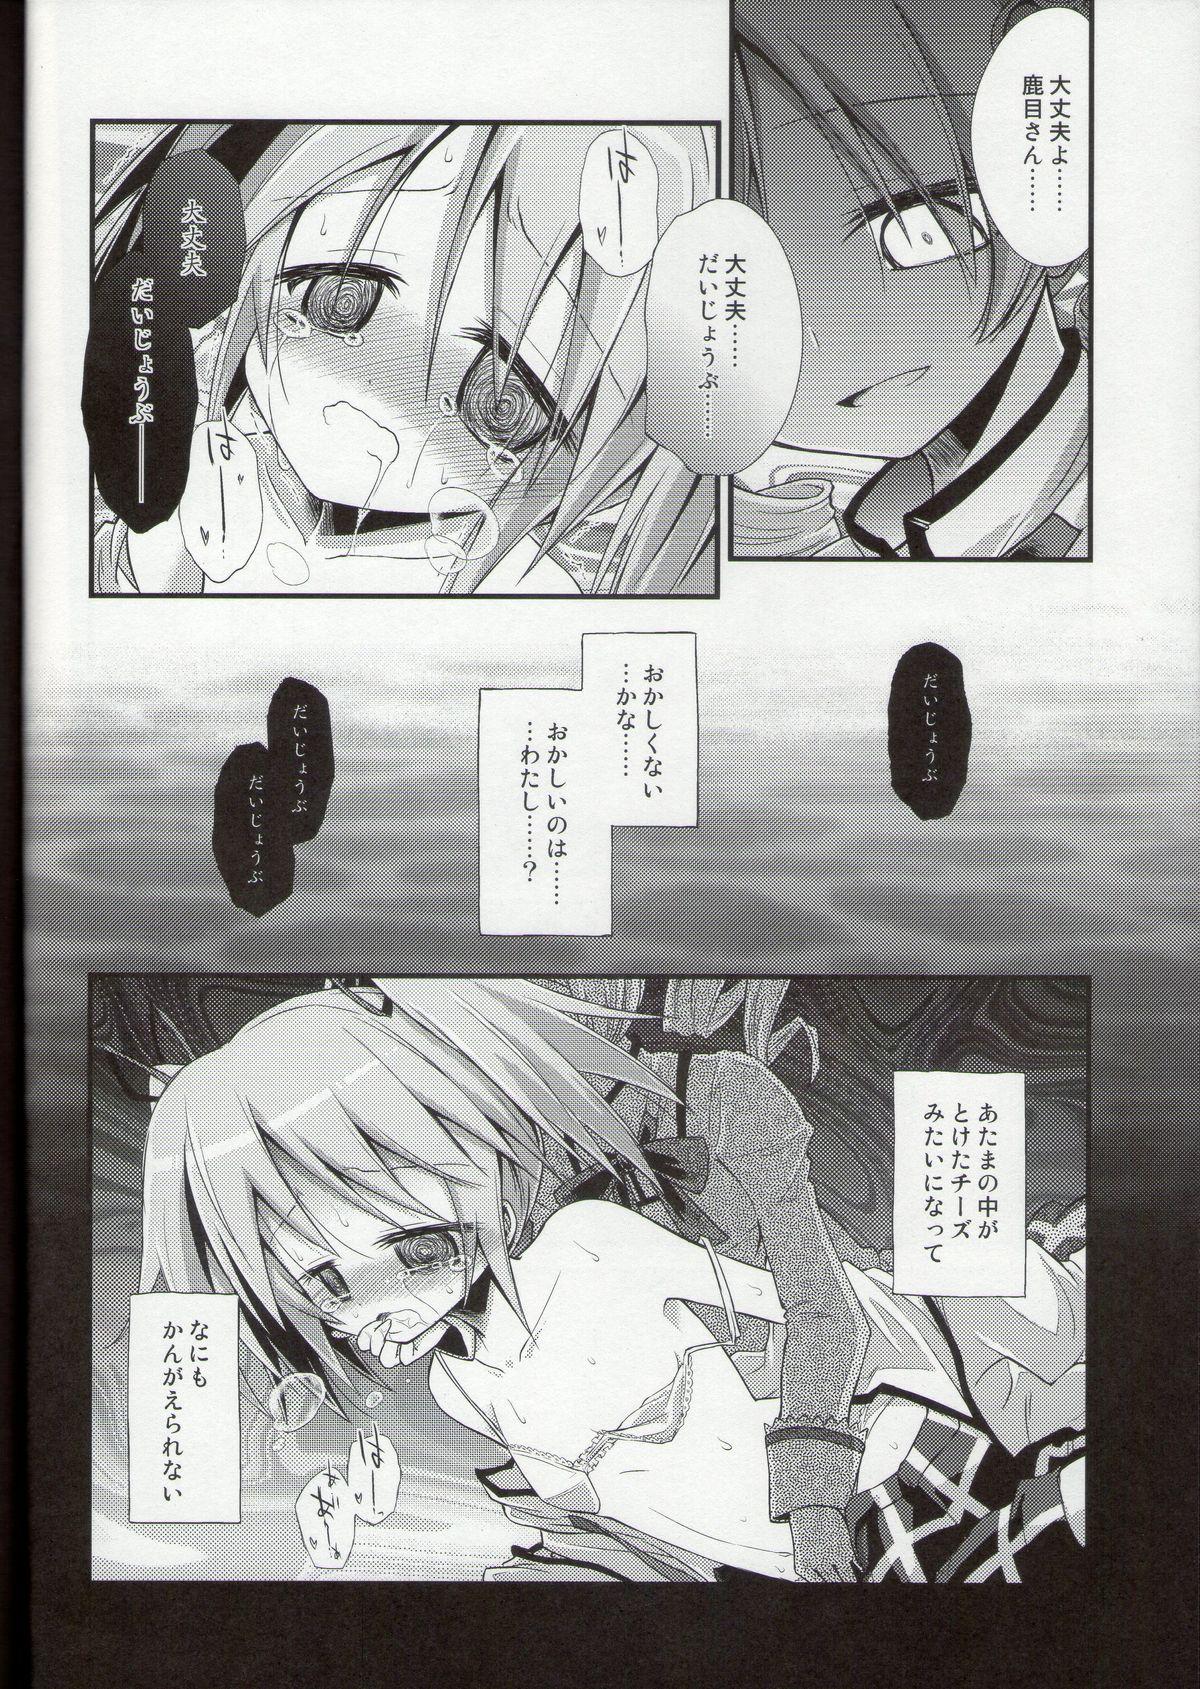 Teasing Doro no Naka Yume no Soko - Puella magi madoka magica Transex - Page 12